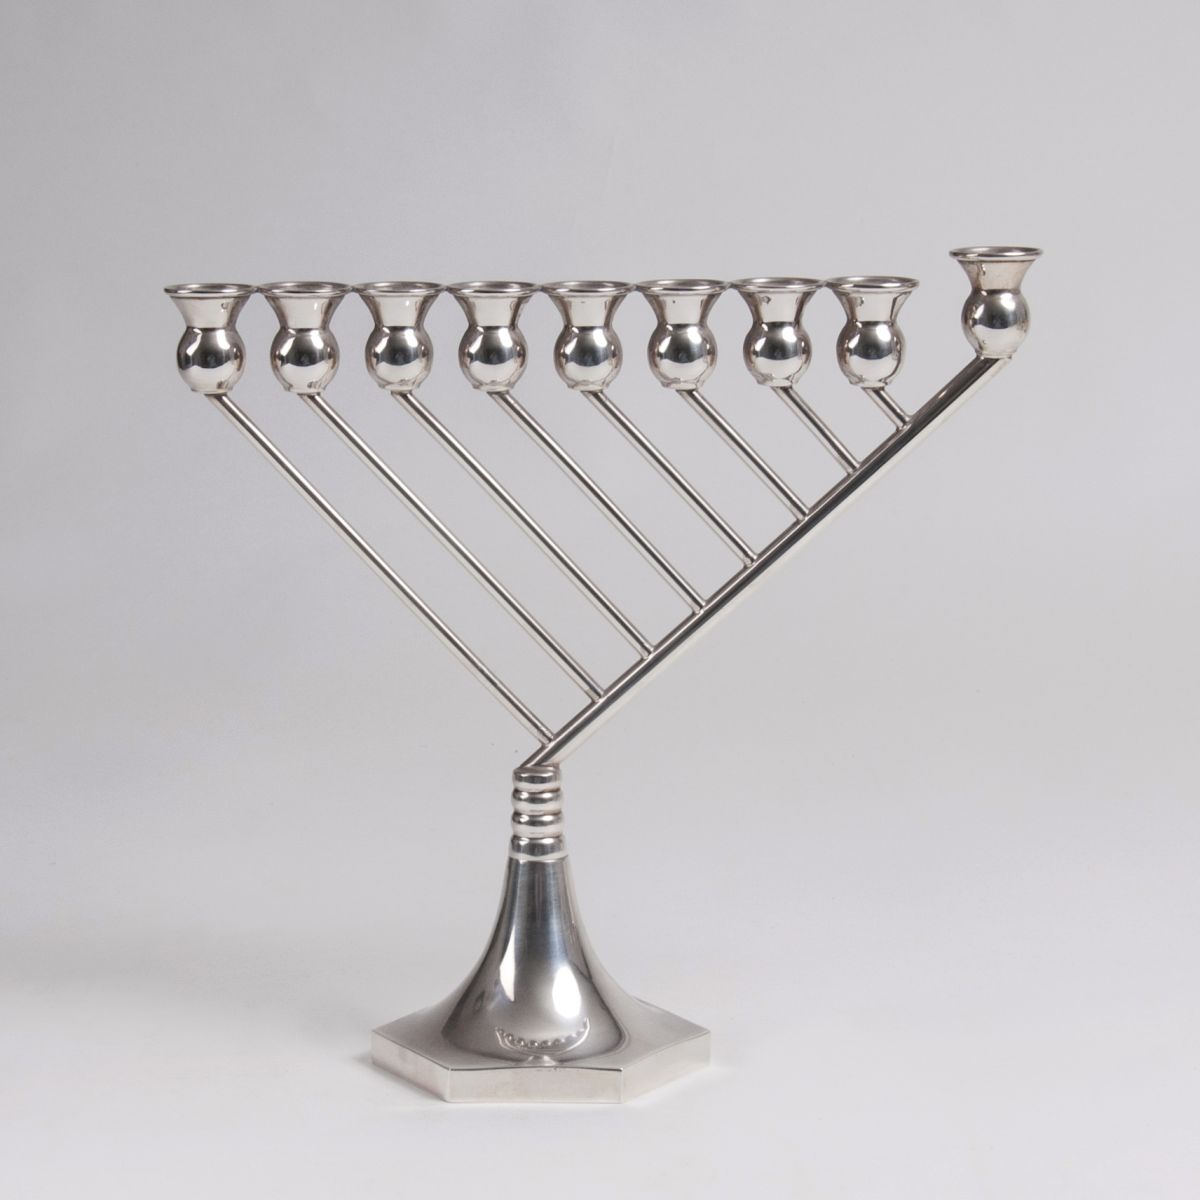 A traditional israeli Hanukkah menorah